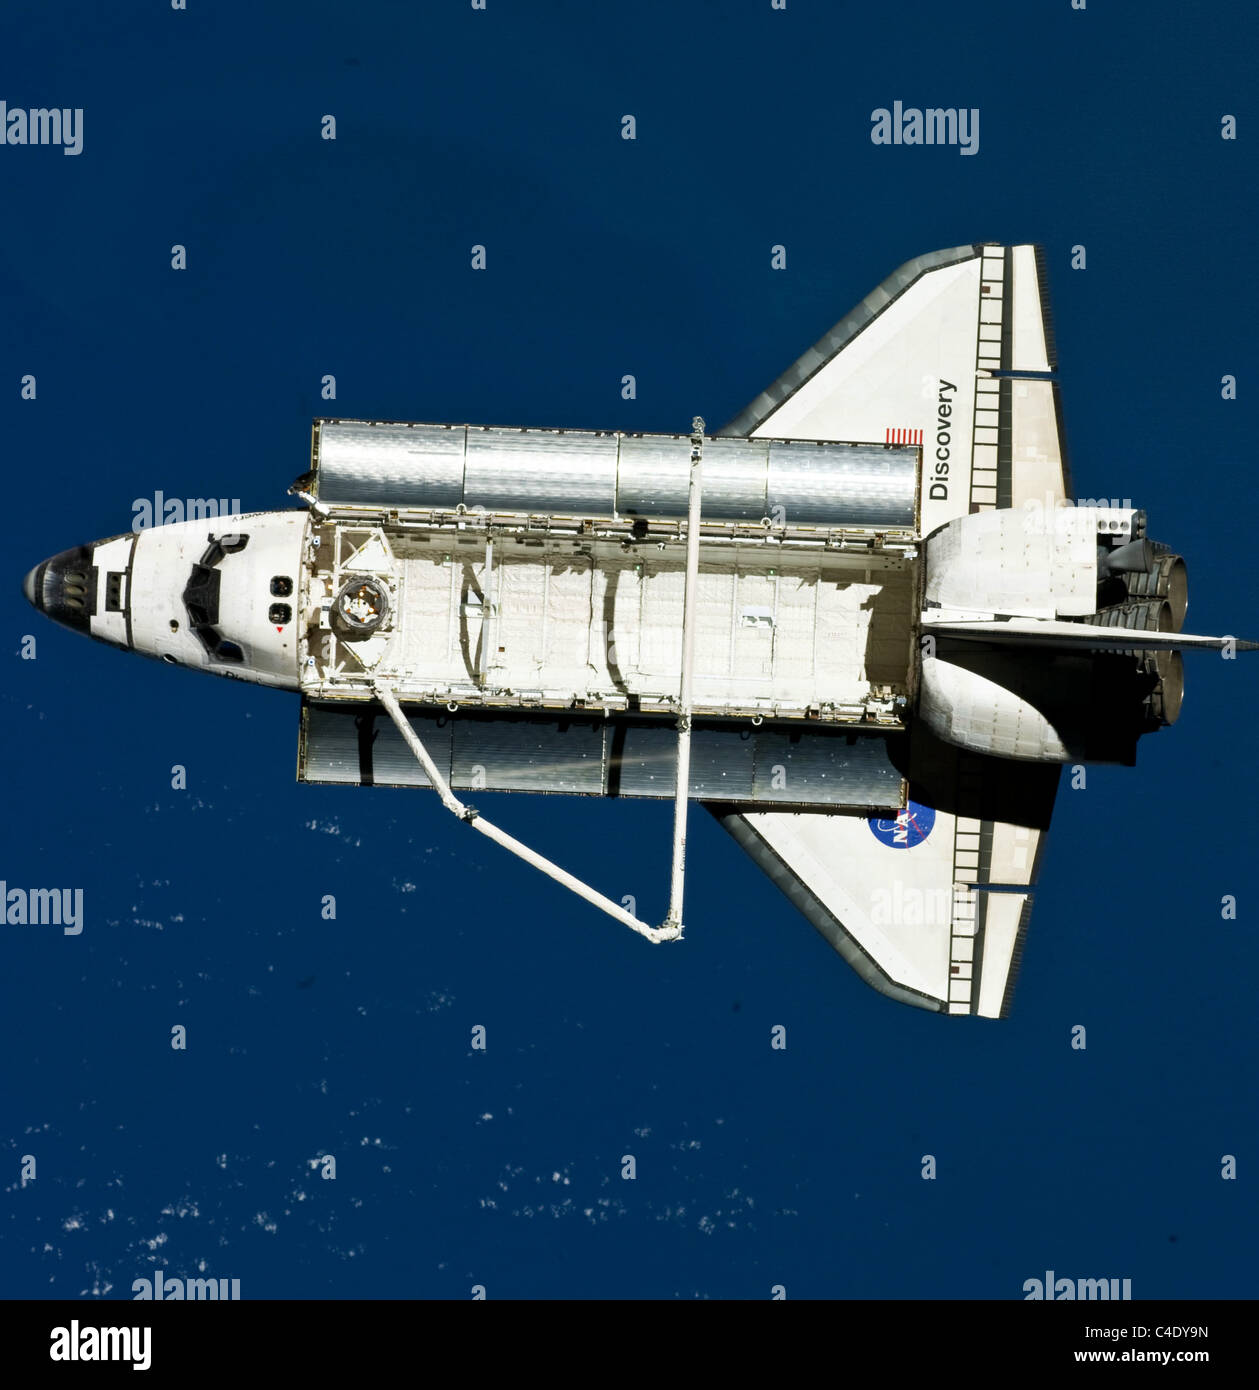 Space Shuttle Discovery im Orbit von oben gesehen. Stockfoto